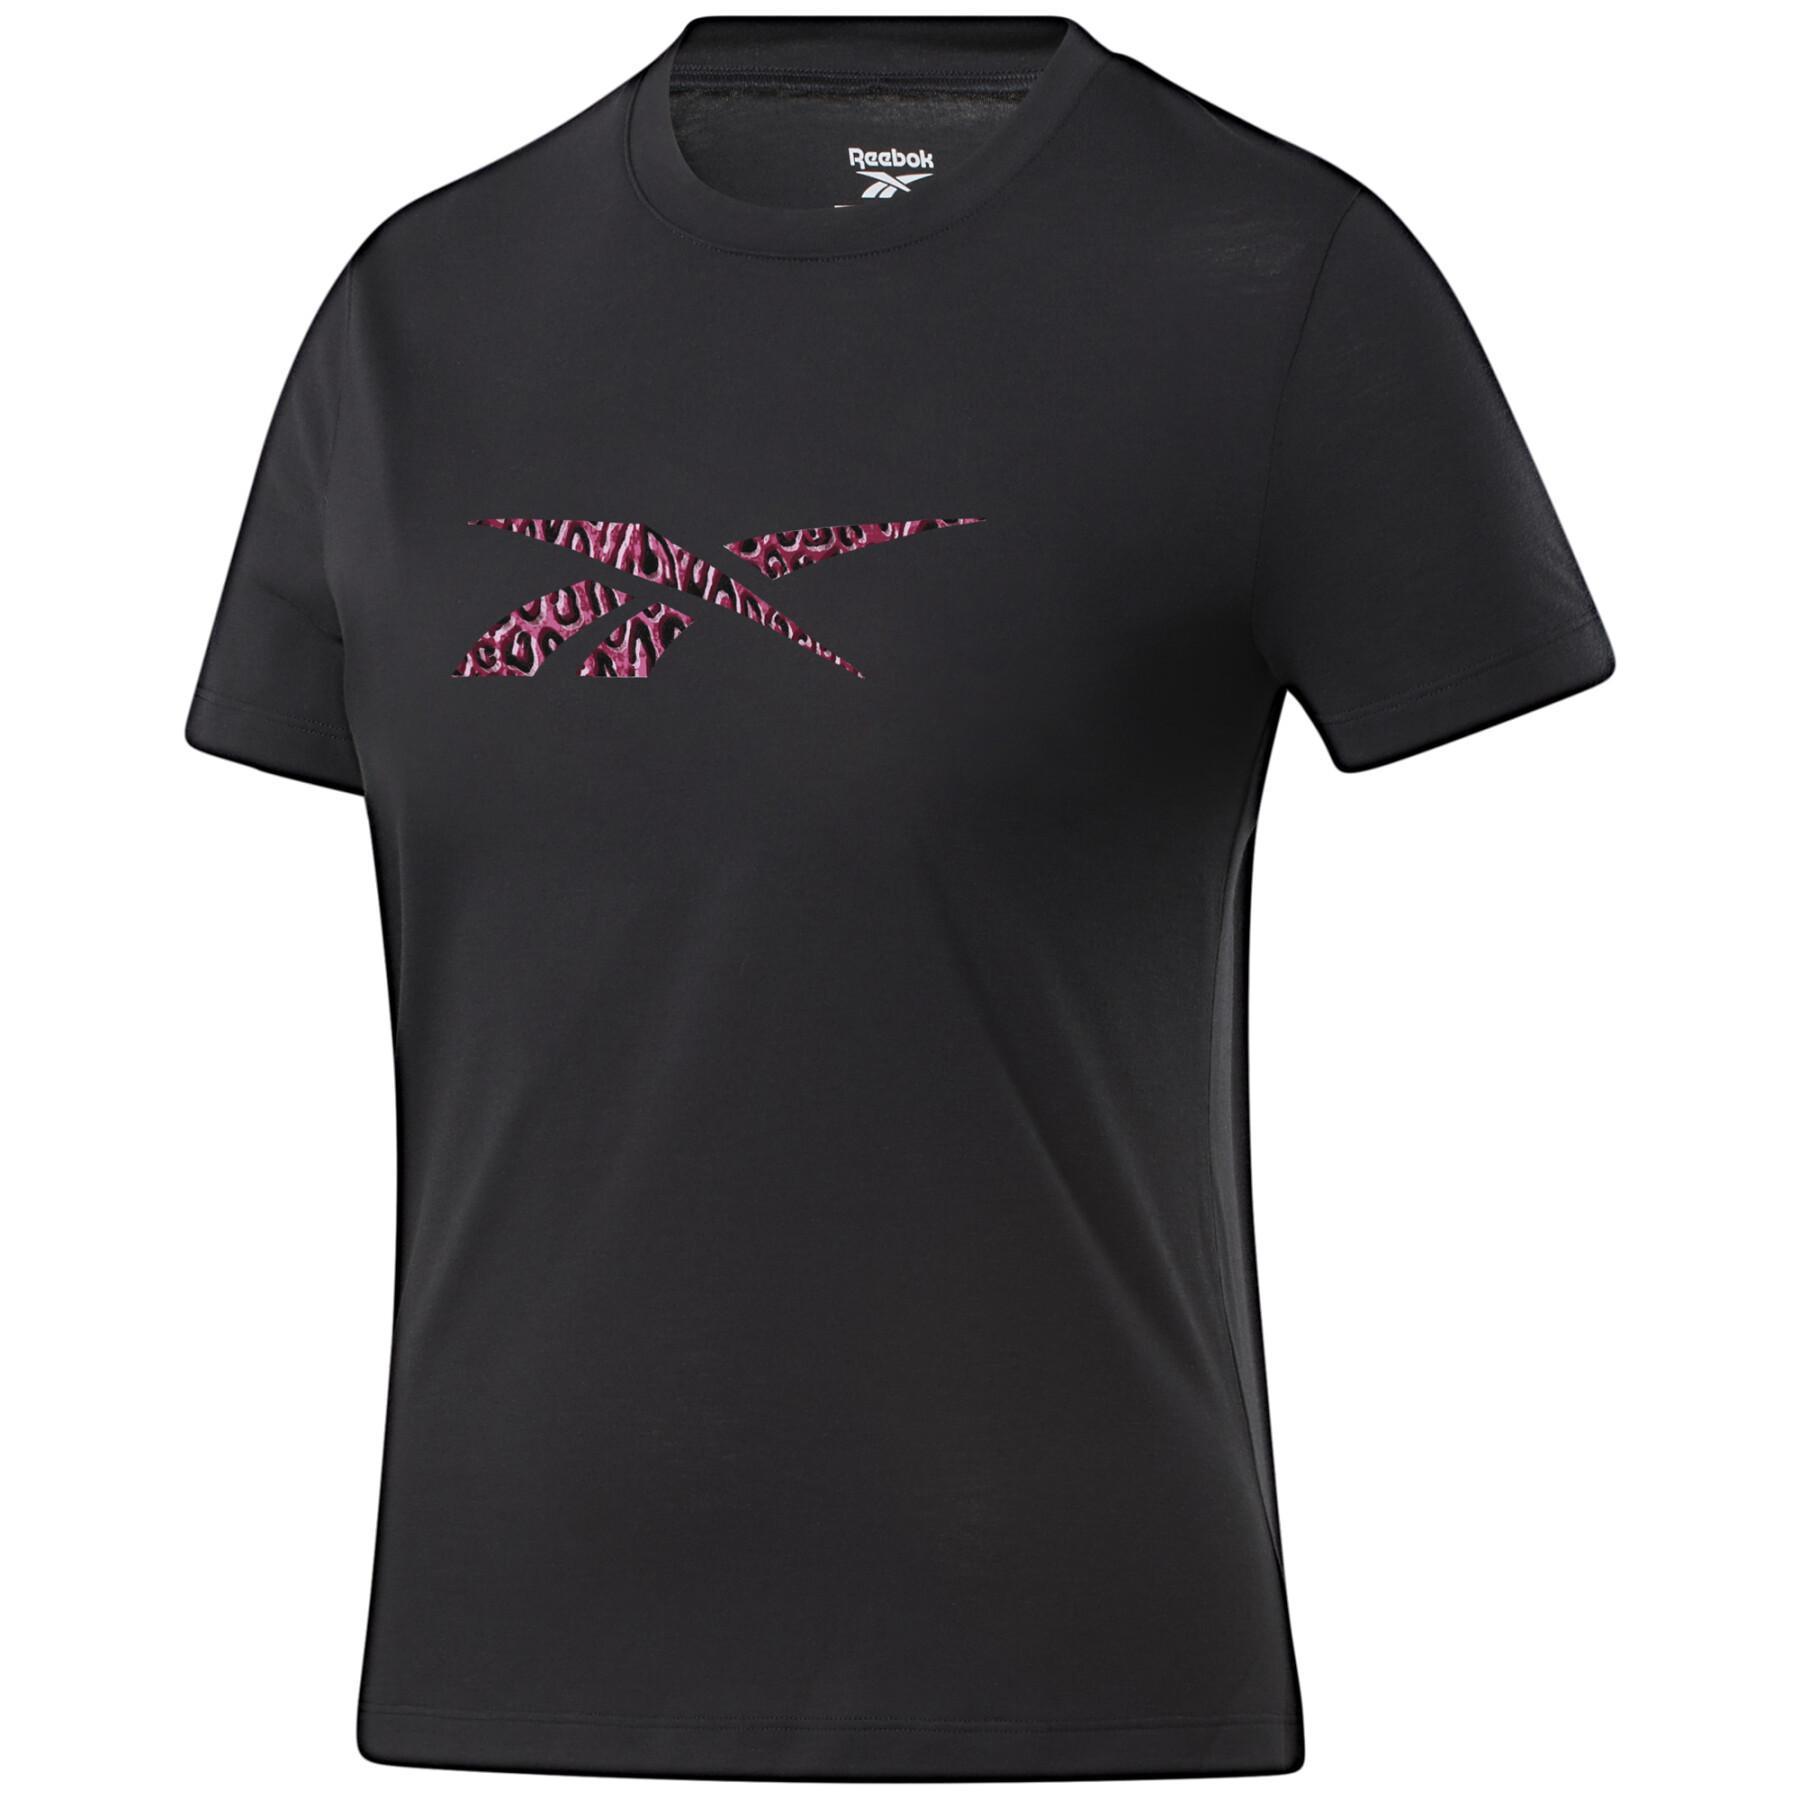 T-shirt för kvinnor Reebok Modern Safari Logo